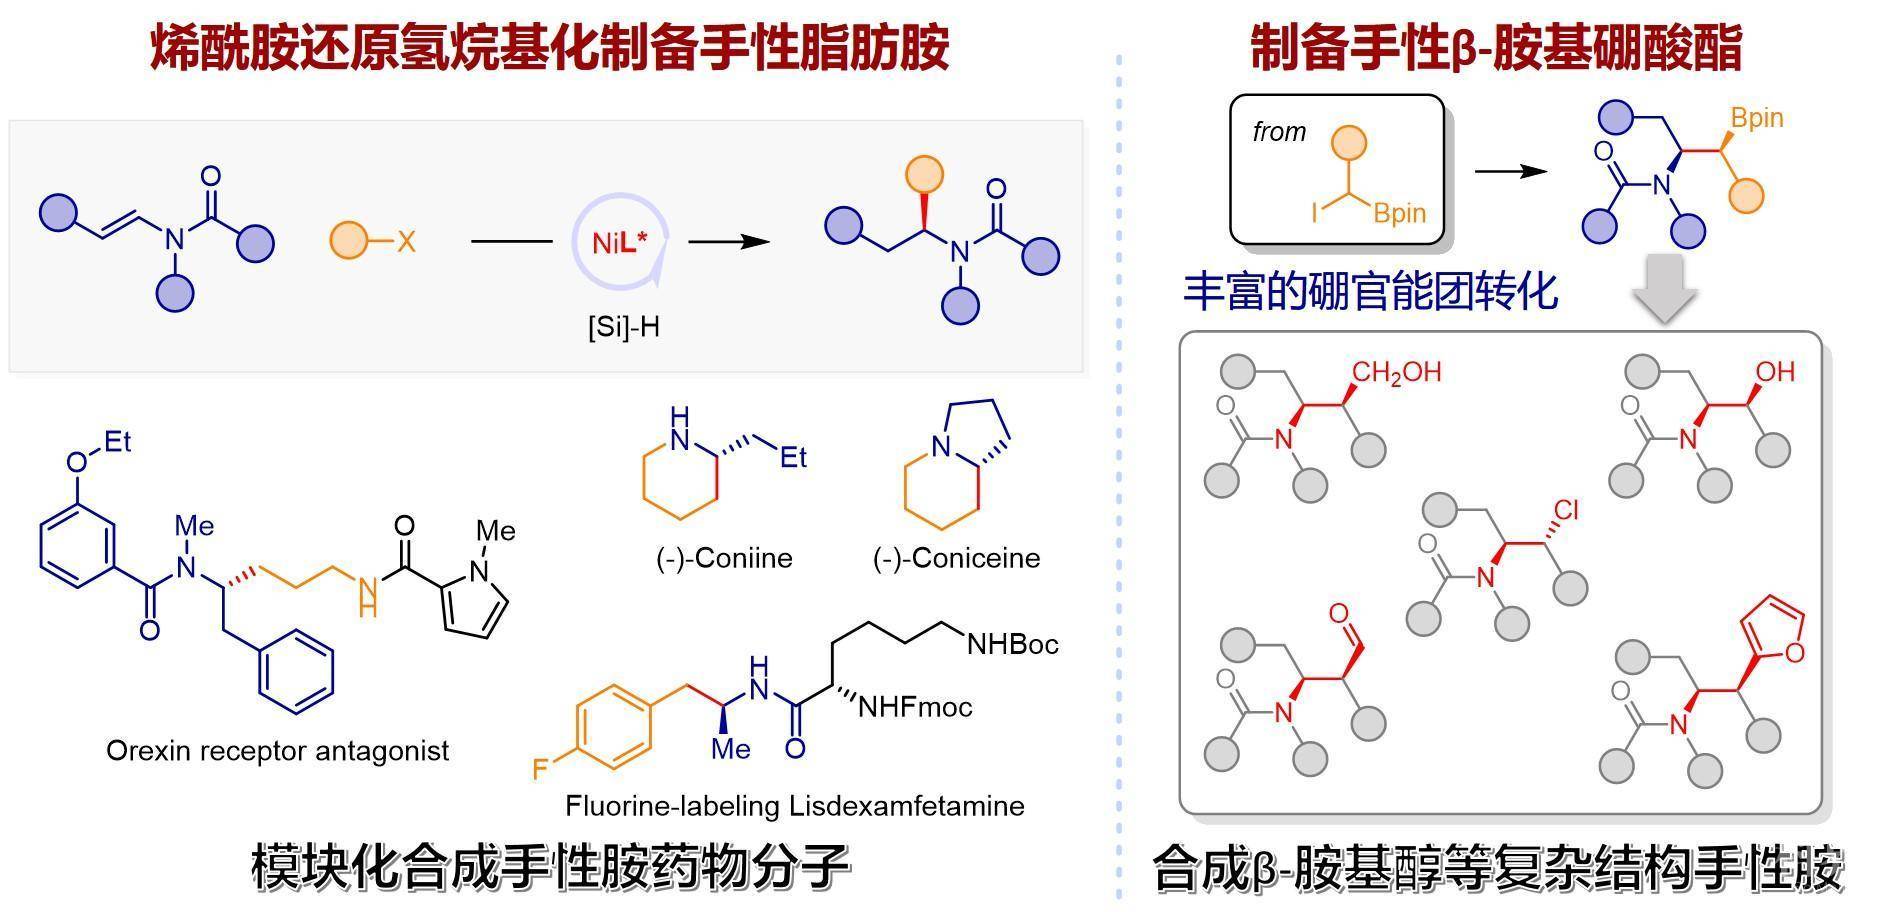 中国科大在手性胺合成领域取得重要进展